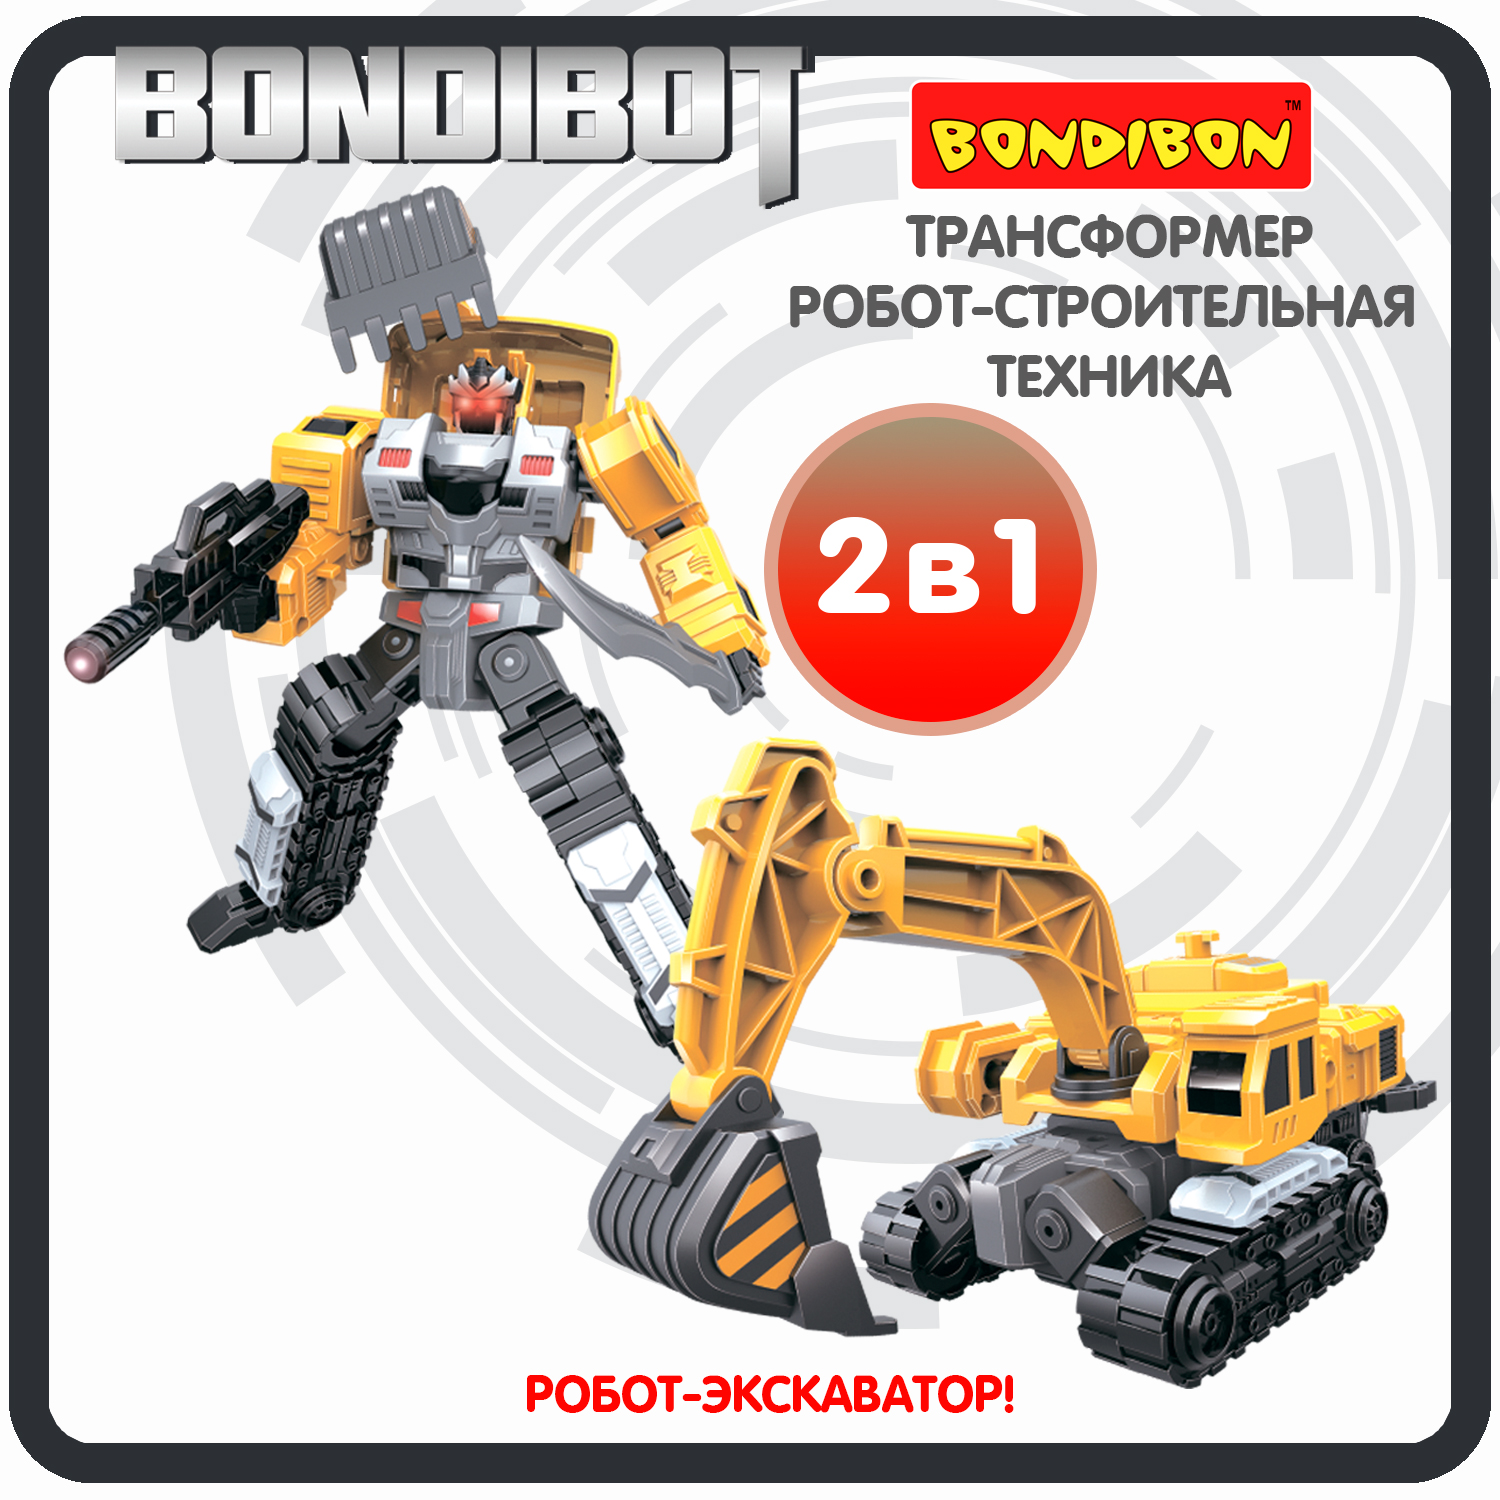 Трансформер робот-строительная техника, 2в1 BONDIBOT Bondibon, экскаватор / ВВ6048 трансформер конструктор с отверткой 2в1 bondibot bondibon экскаватор c ковшом робот